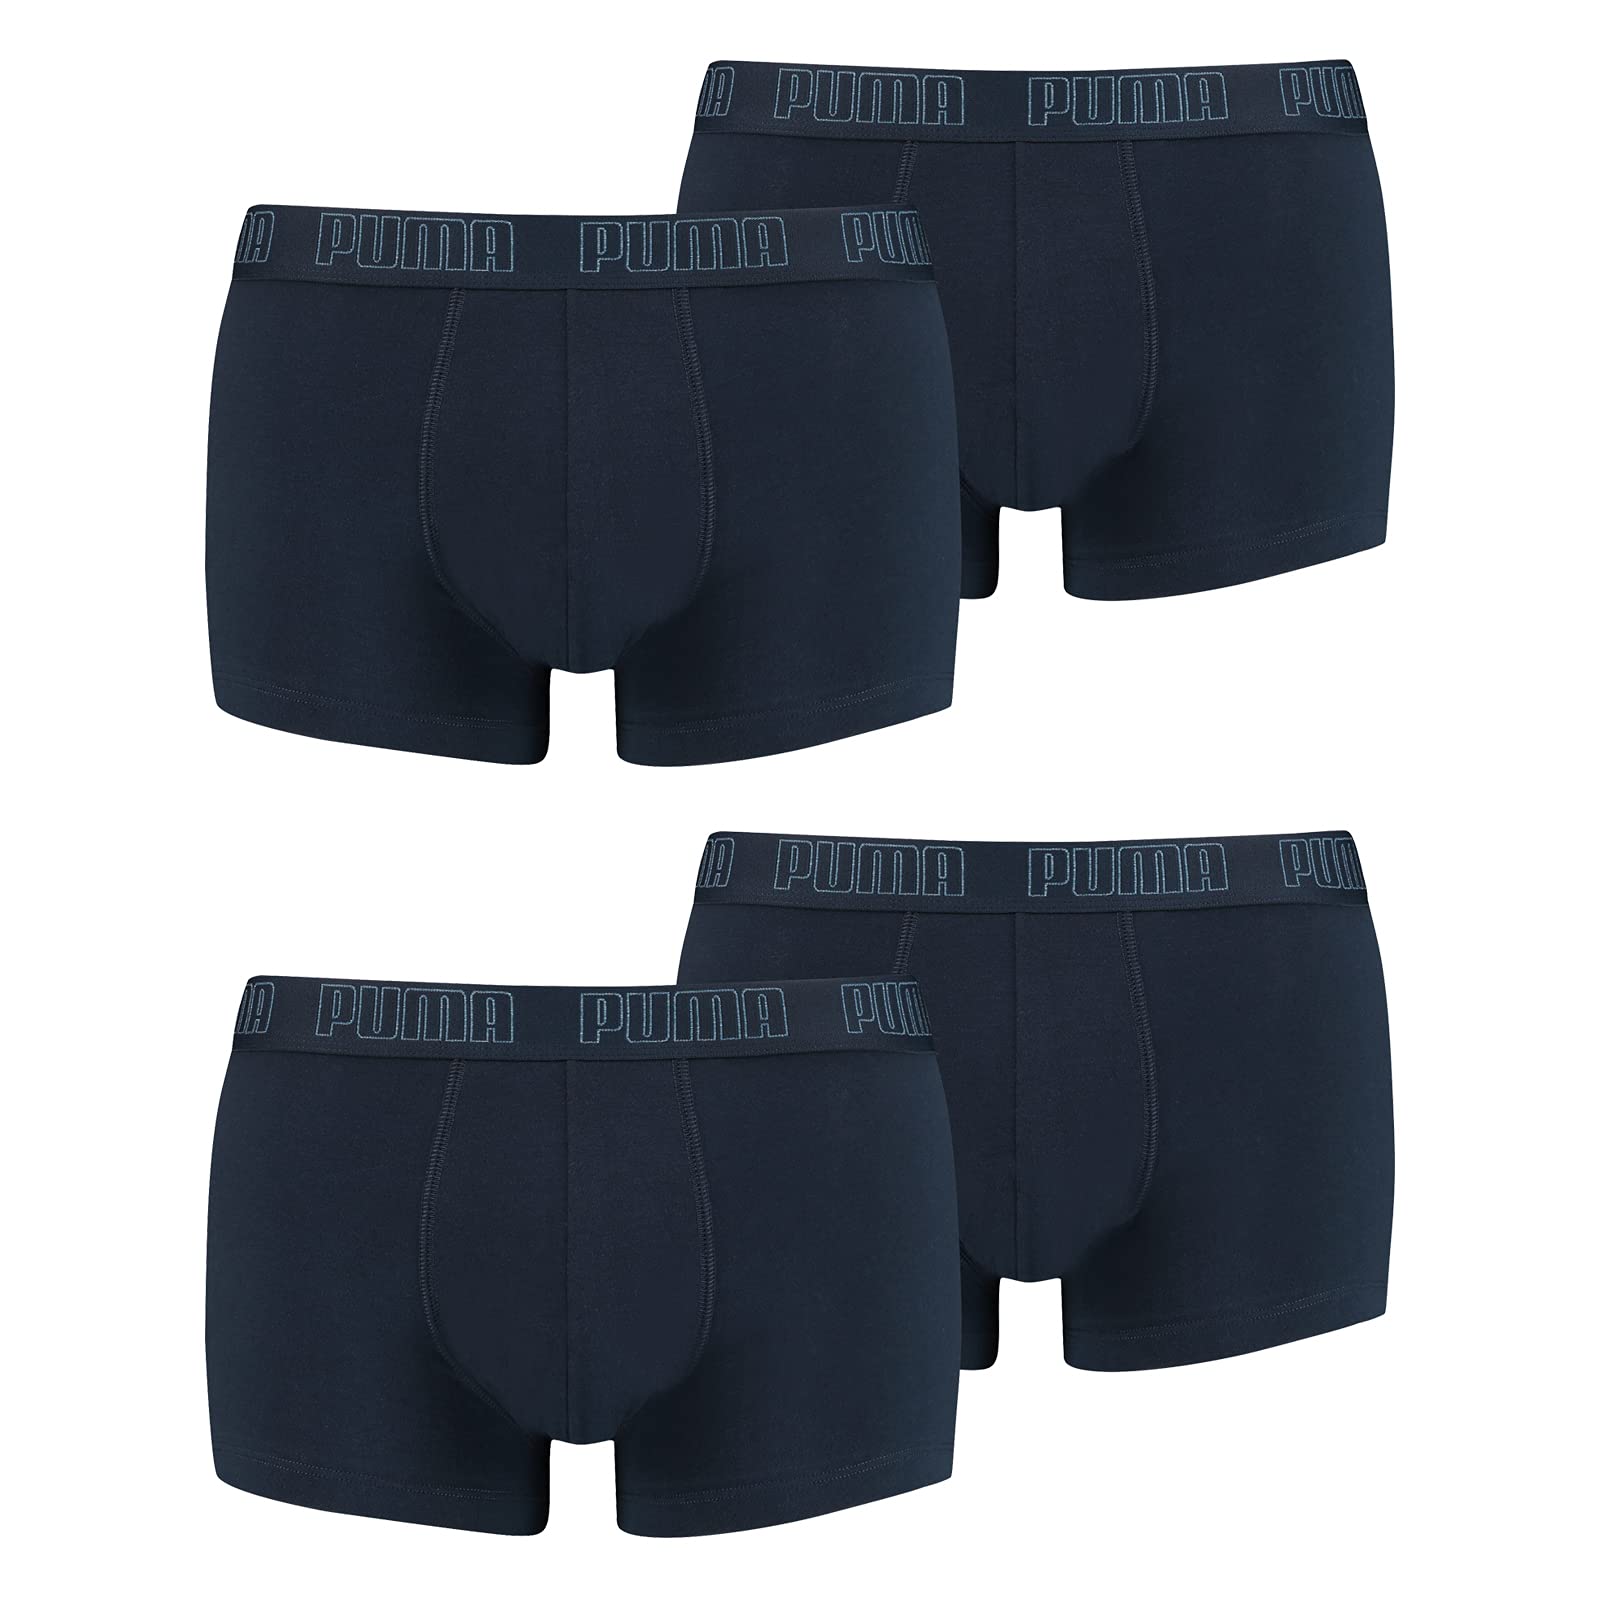 PUMA Herren Shortboxer Unterhosen Trunks 4er Pack, Wäschegröße:XL, Artikel:-010 Navy